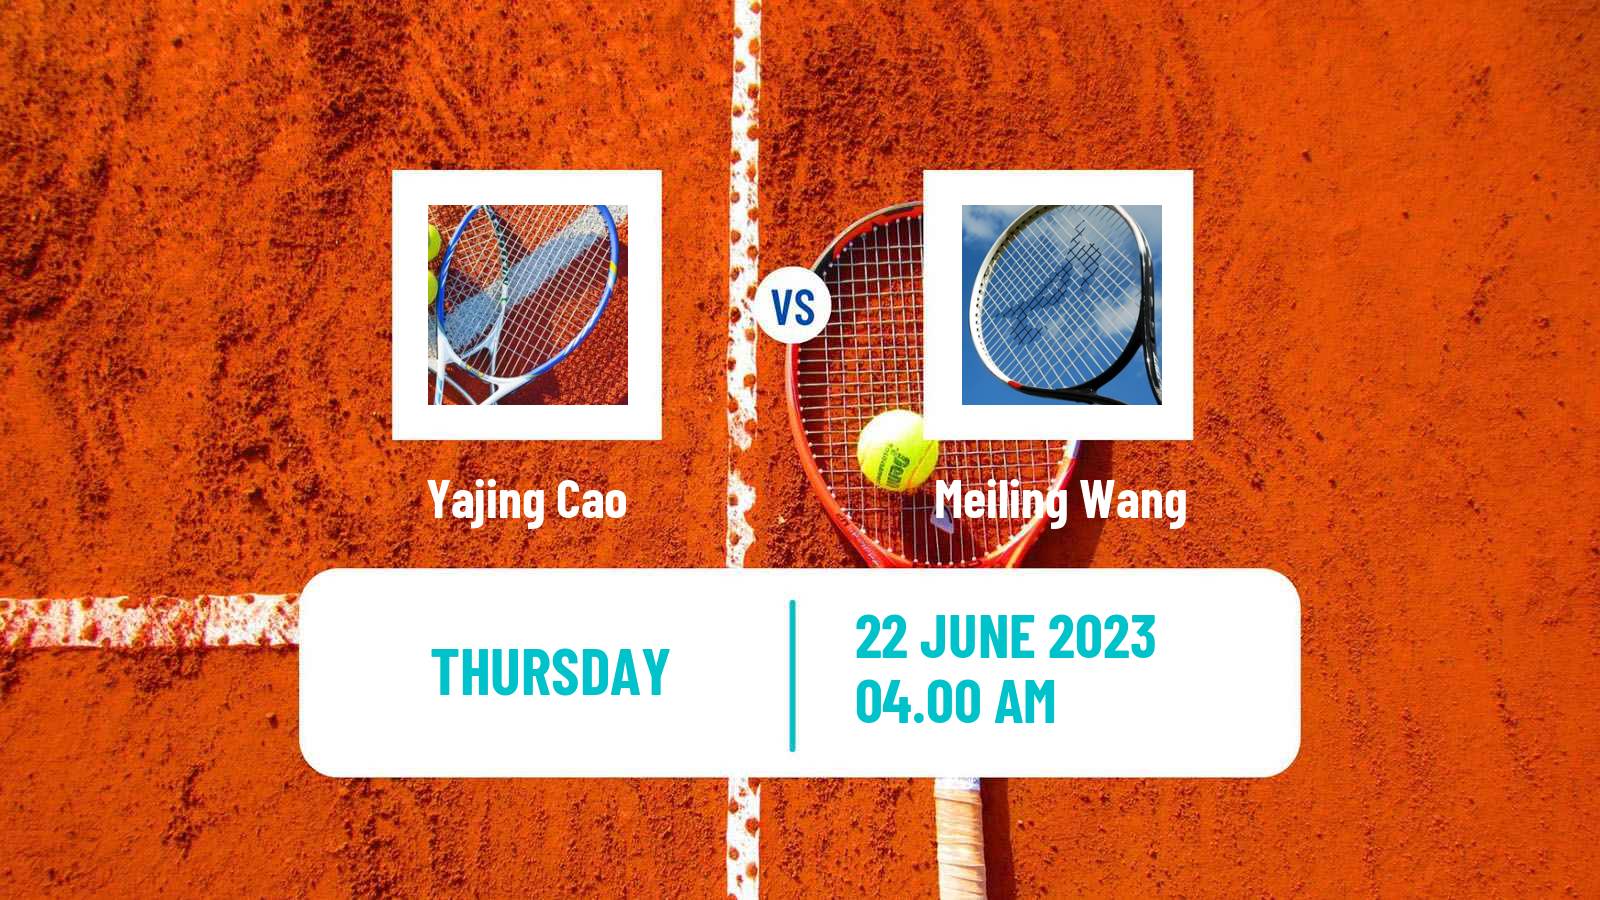 Tennis ITF W15 Tianjin 2 Women Yajing Cao - Meiling Wang